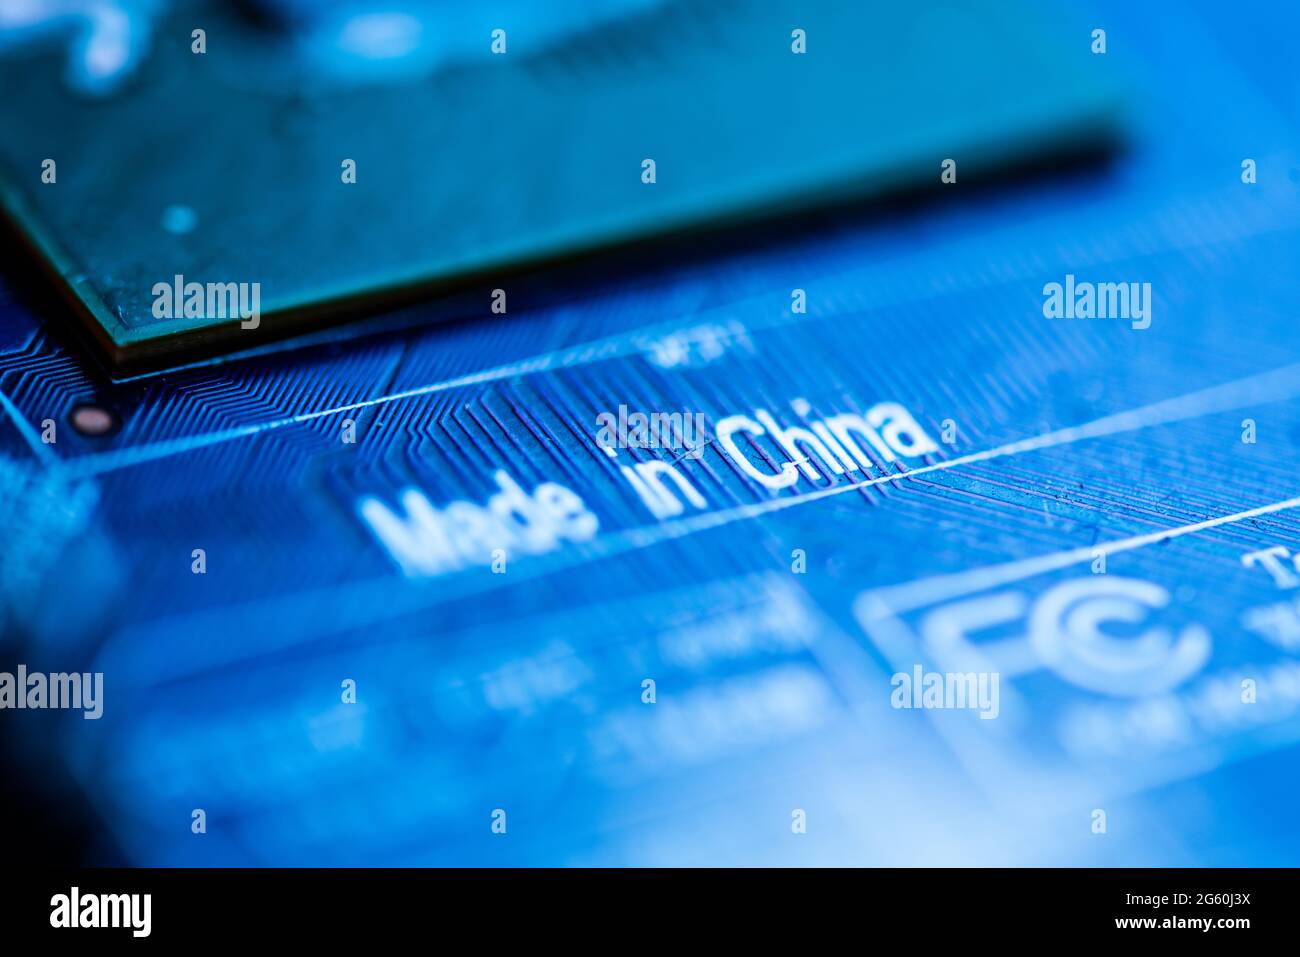 Gros plan d'une carte de circuit imprimé bleue avec les mots Made china imprimés dessus. Banque D'Images